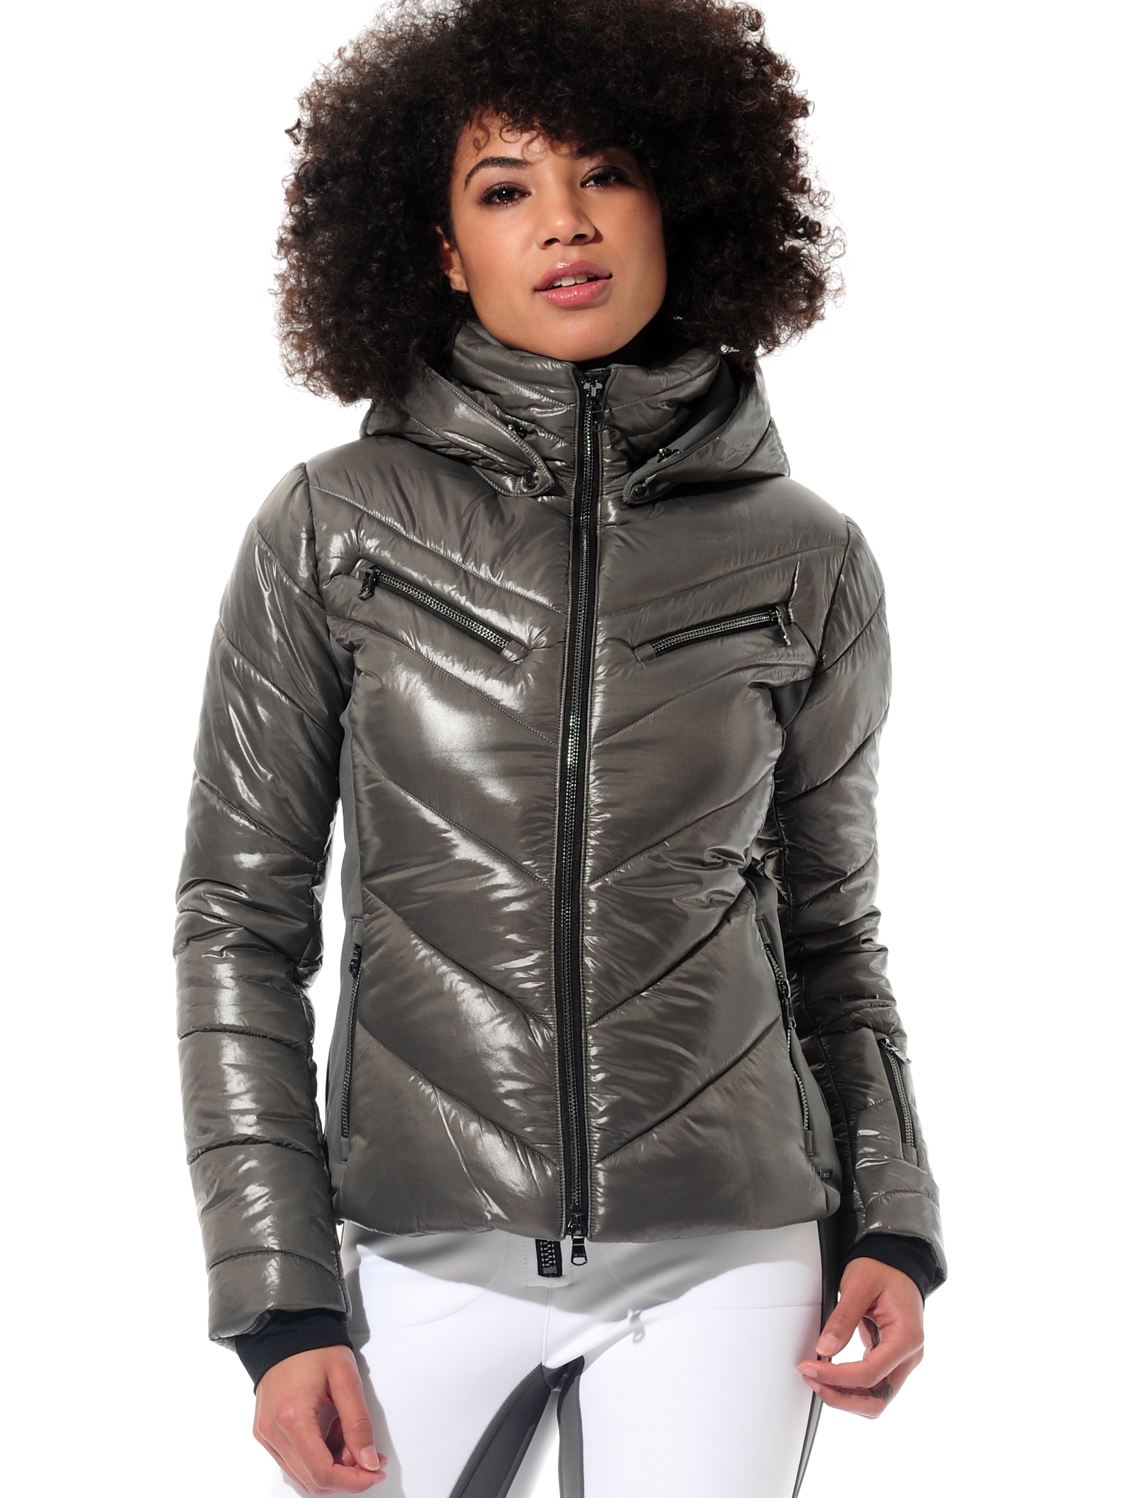 shiny ski jacket with 4way stretch side panels steel 